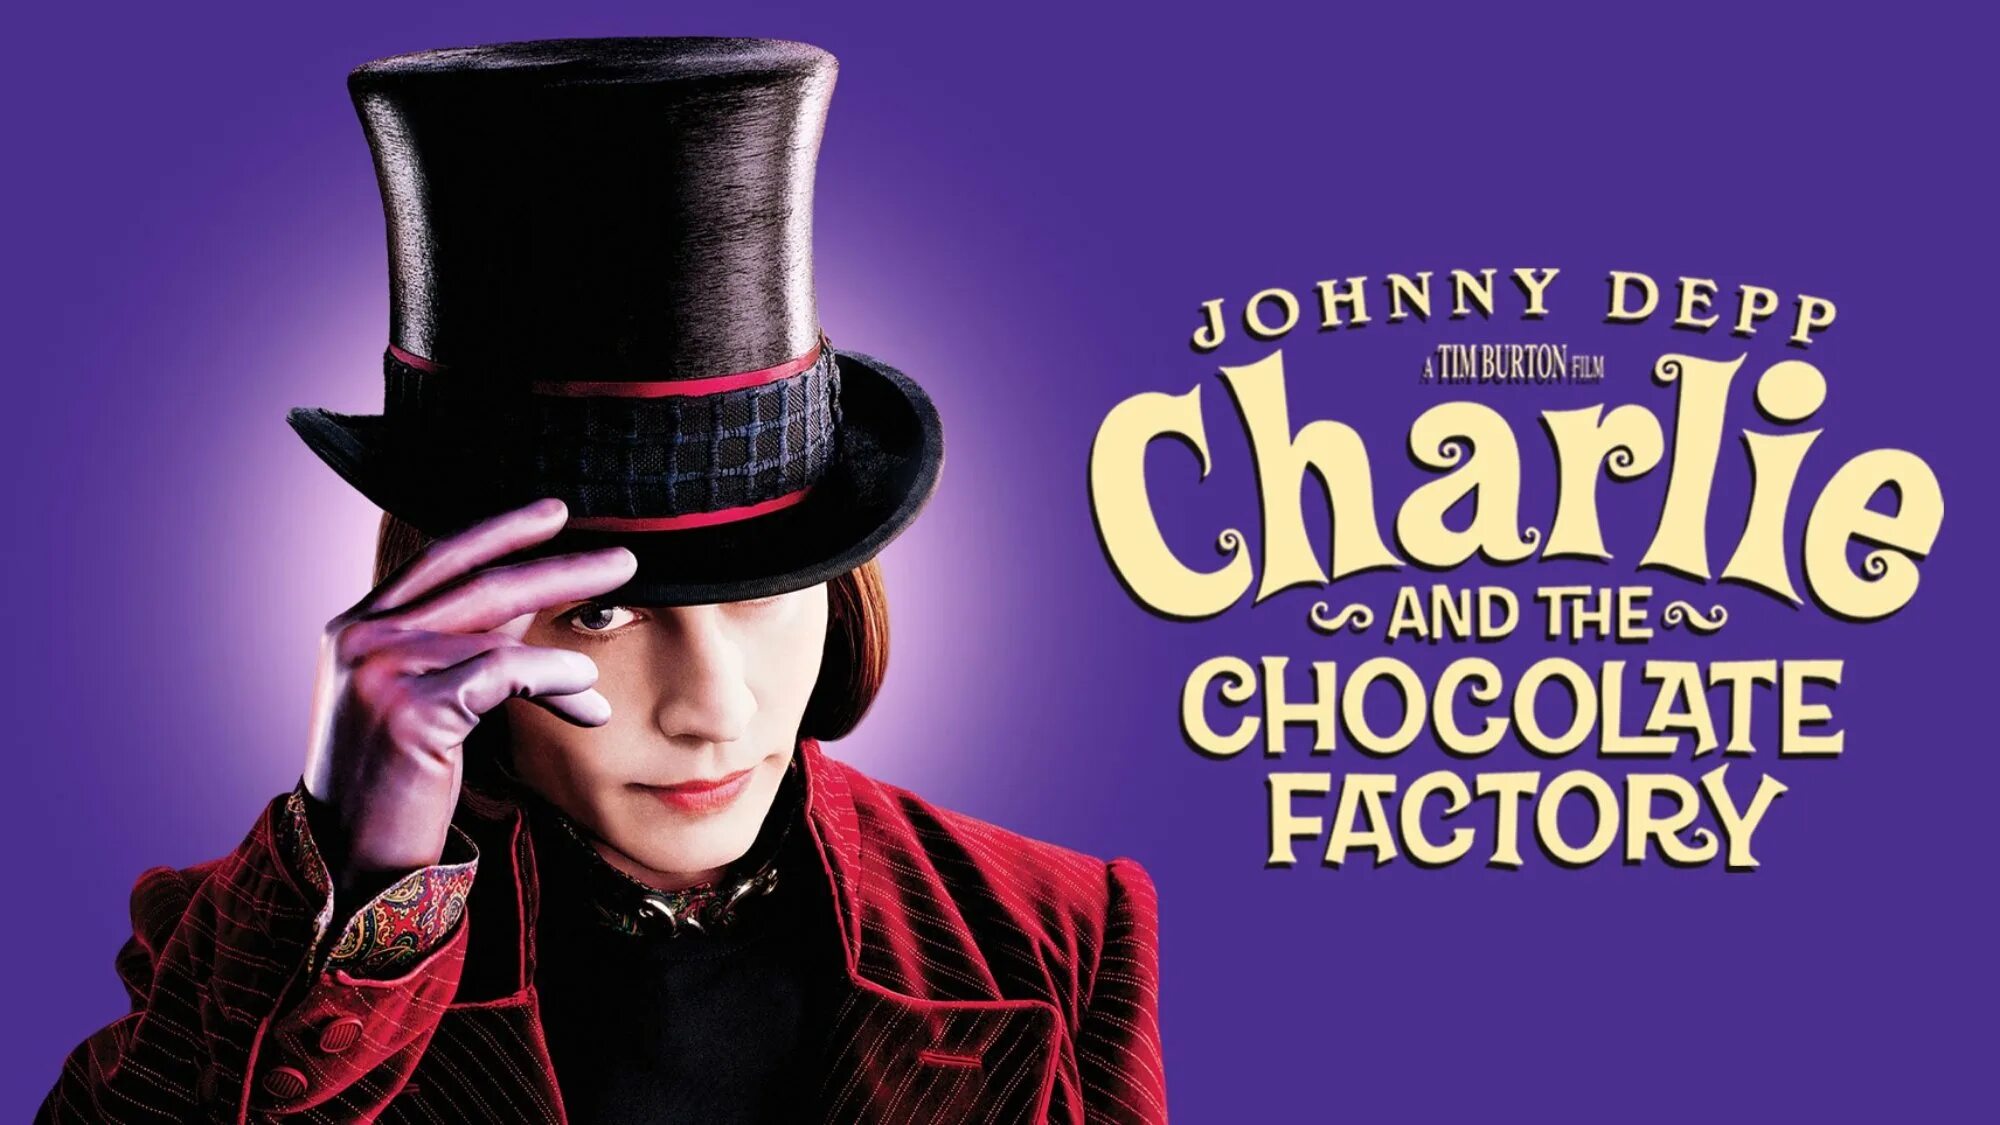 Джонни Депп в 2005 Чарли и шоколадная фабрика. Шоколадная фабрика аудиокнига слушать